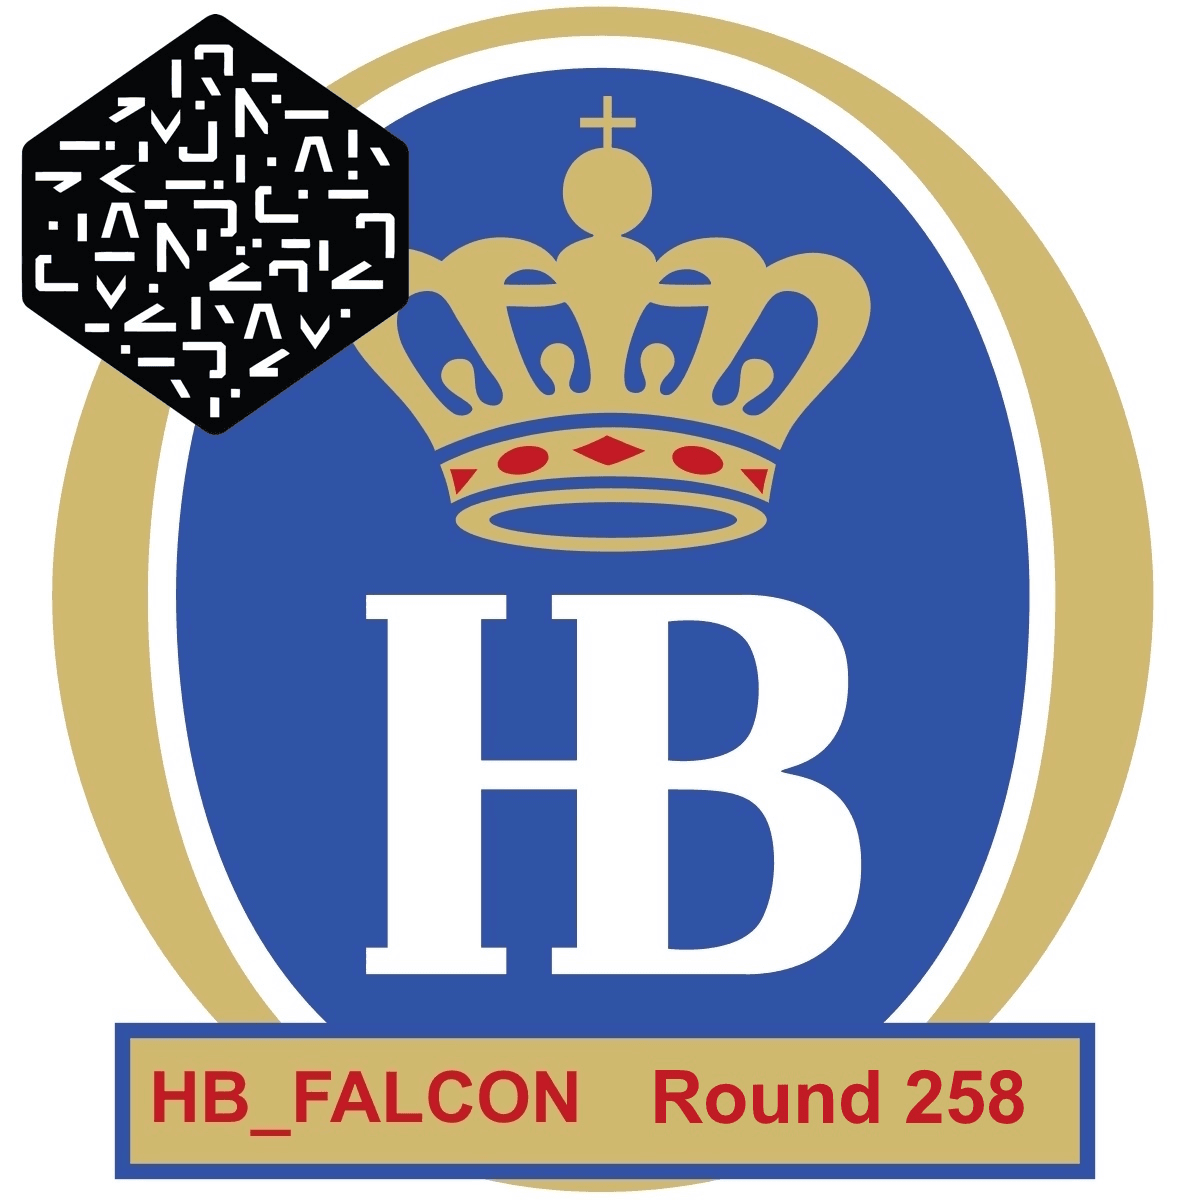 HB_FALCON Round 258 Numerai